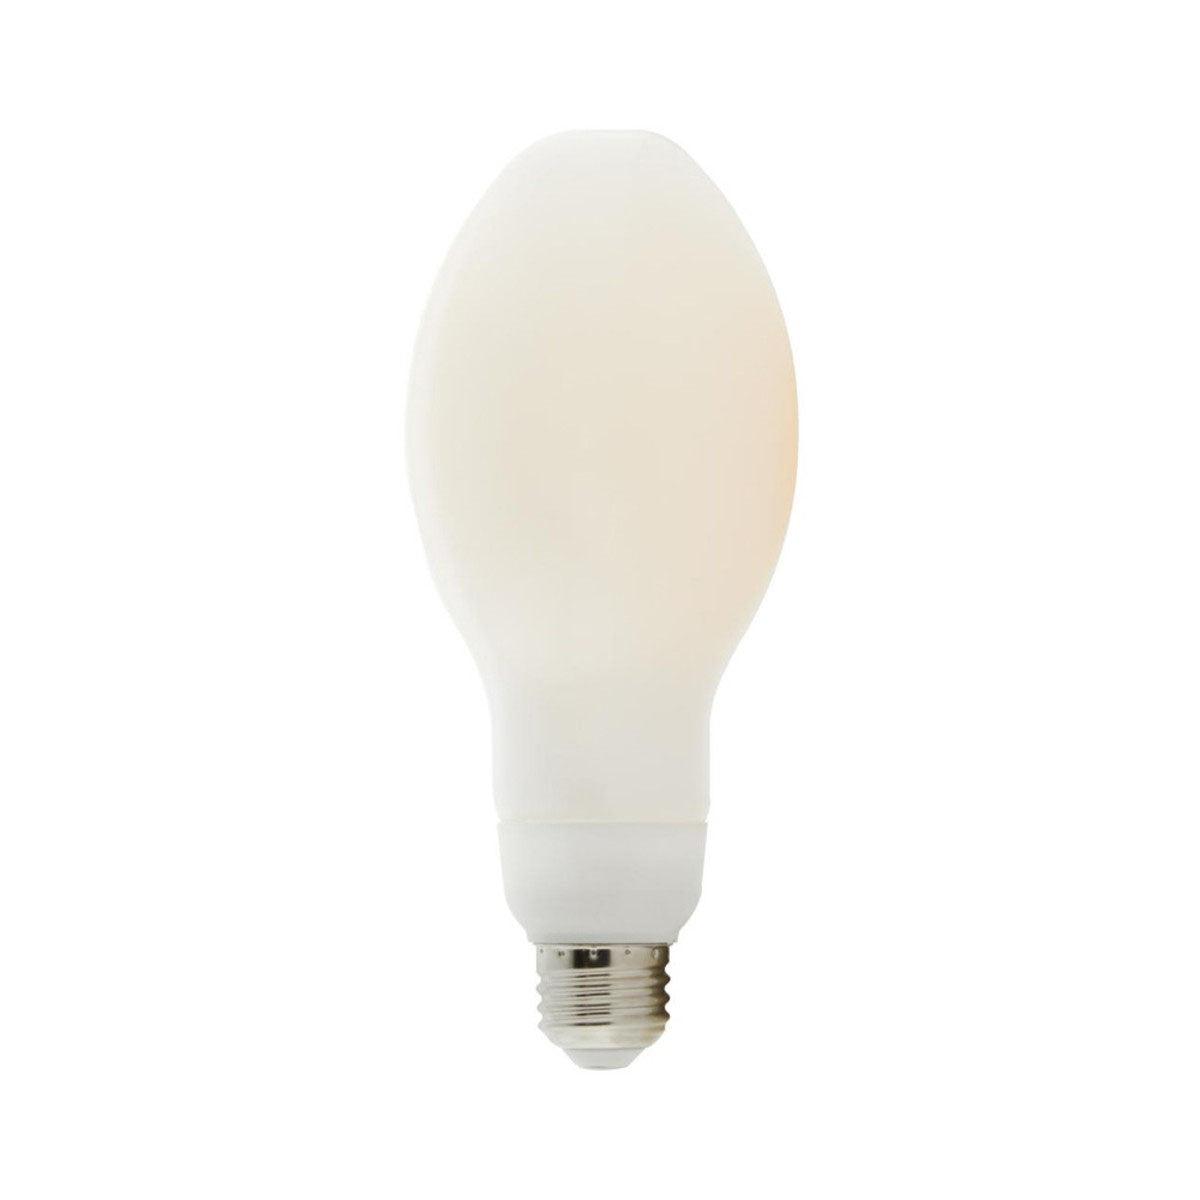 LED ED23 Bulb, 30 Watt, 4000 Lumens, 3000K, E26 Medium Base, Frosted Finish - Bees Lighting